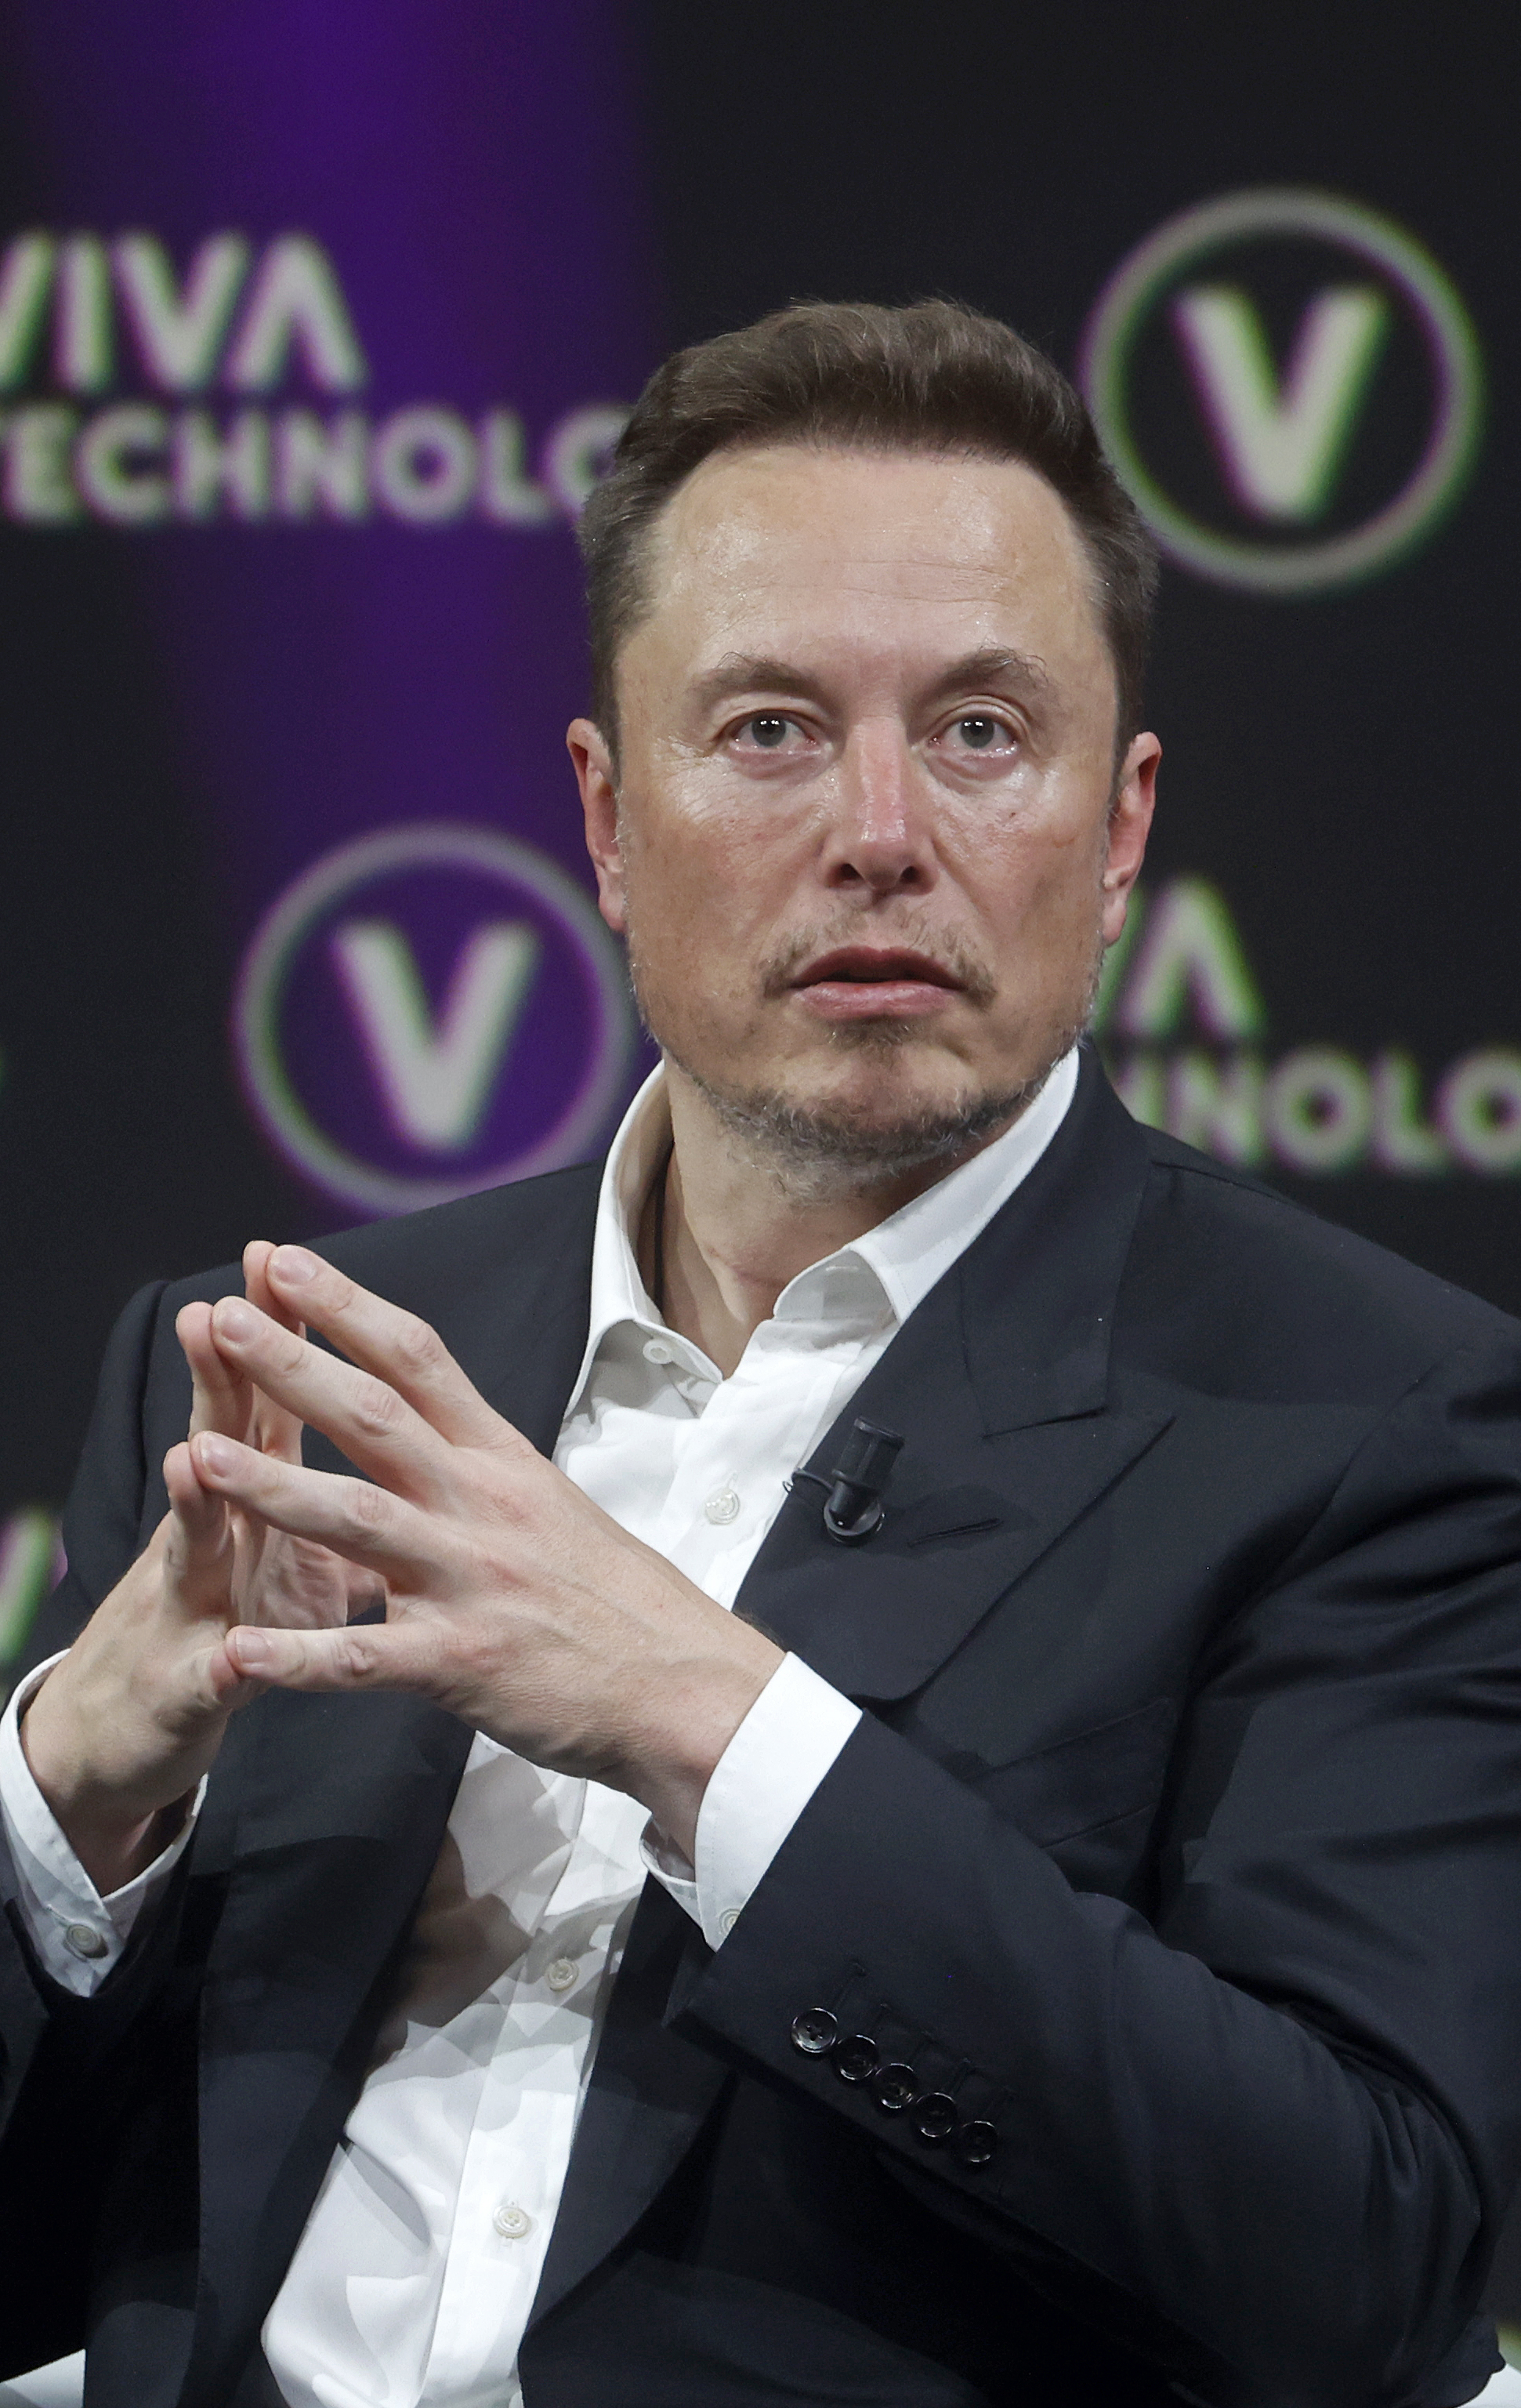 A closeup of Elon